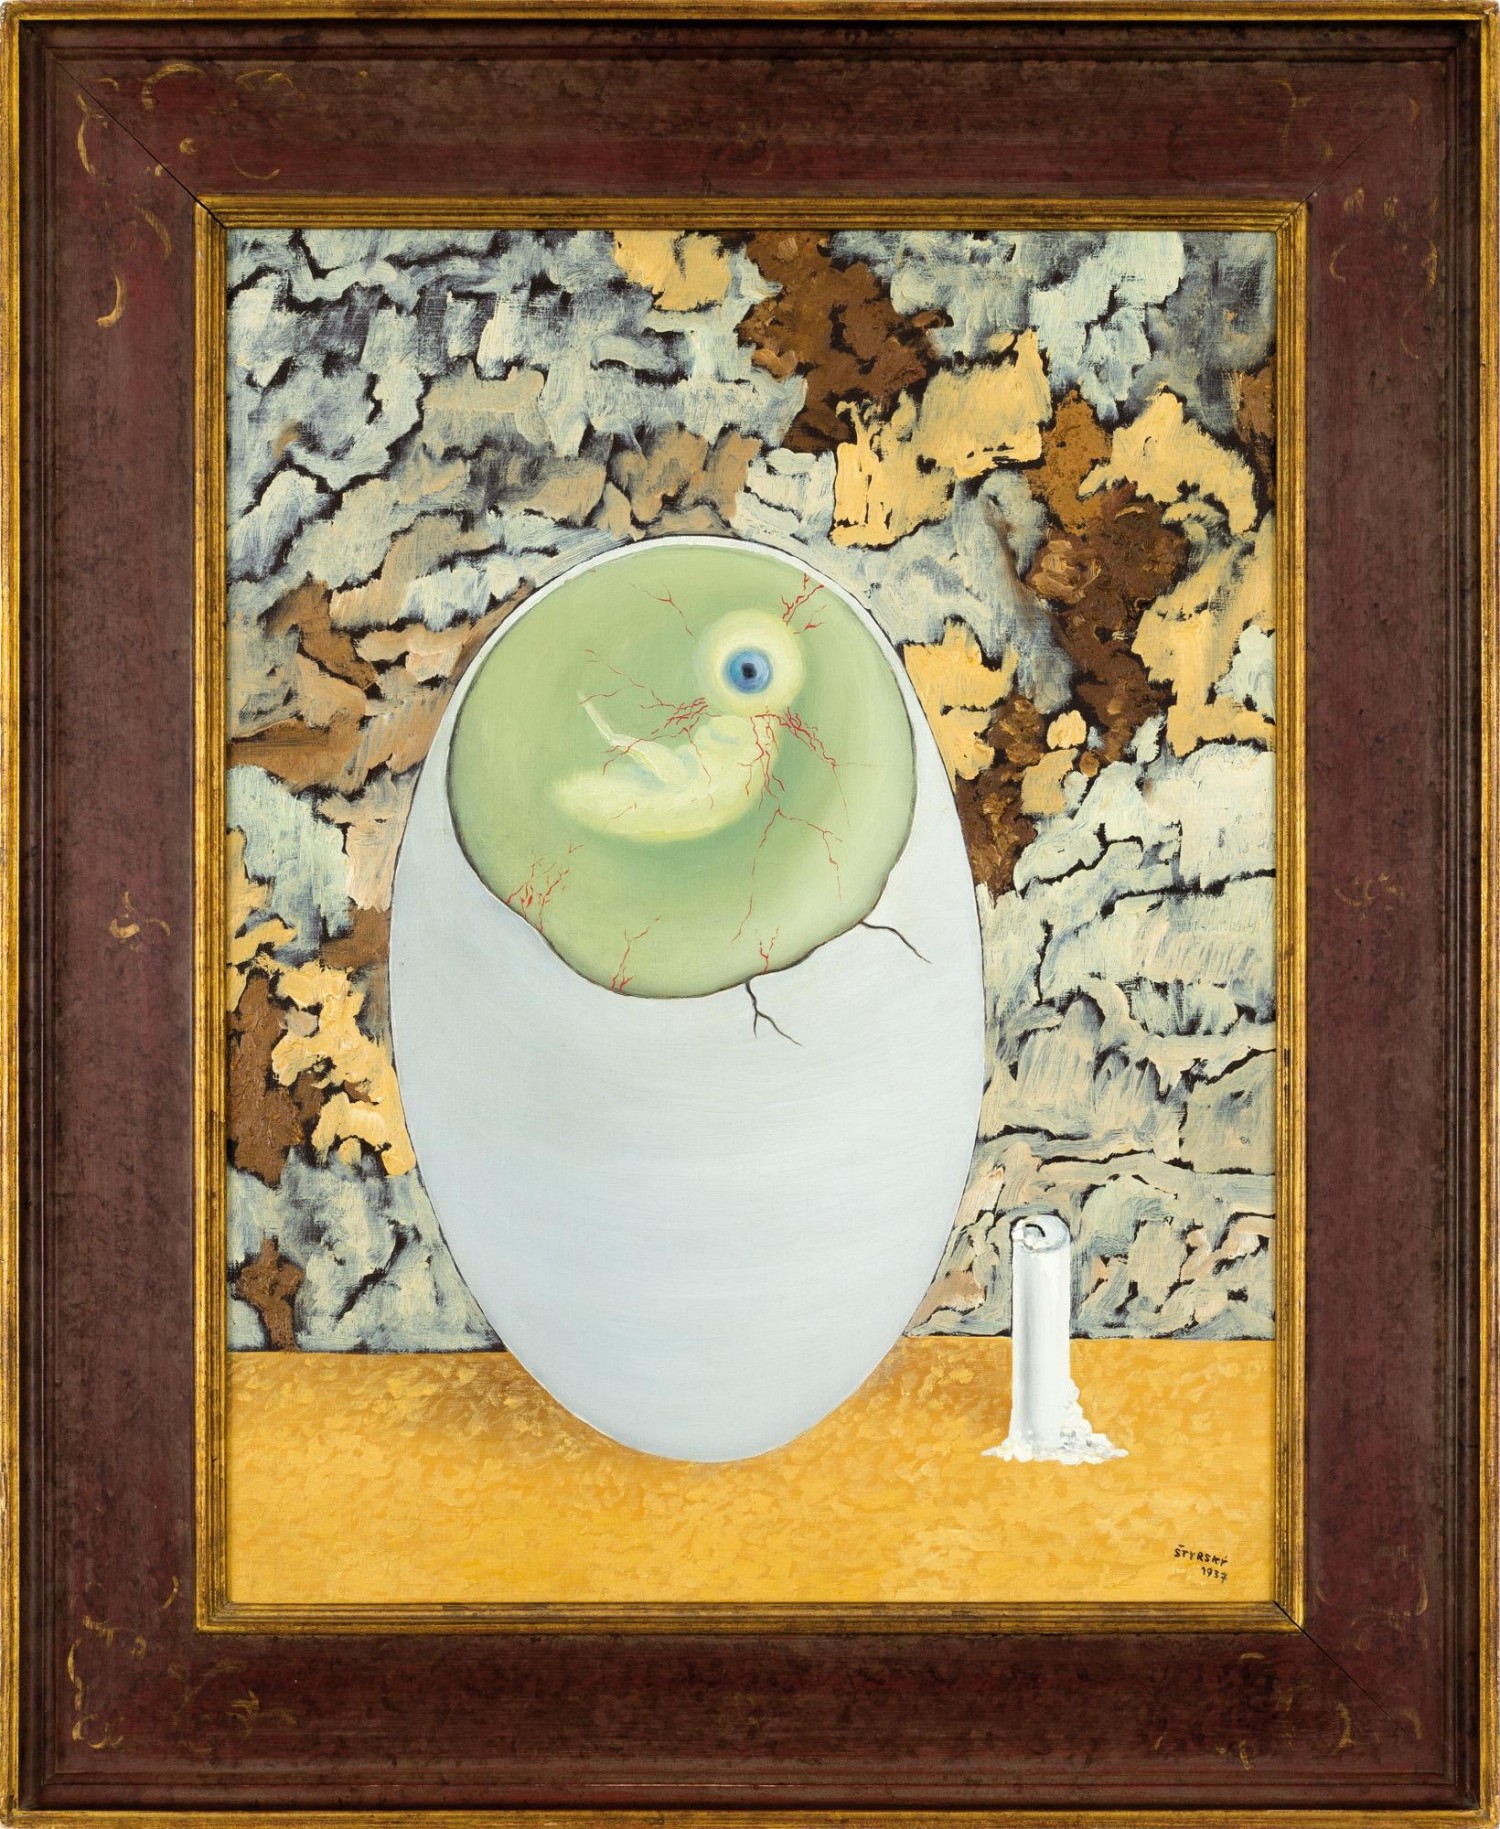 Jindřich Štyrský: Metamorfóza, 1937, olej na plátně, 68 x 50 cm, cena: 17 910 000 Kč 1. Art Consulting 28. 3. 2020